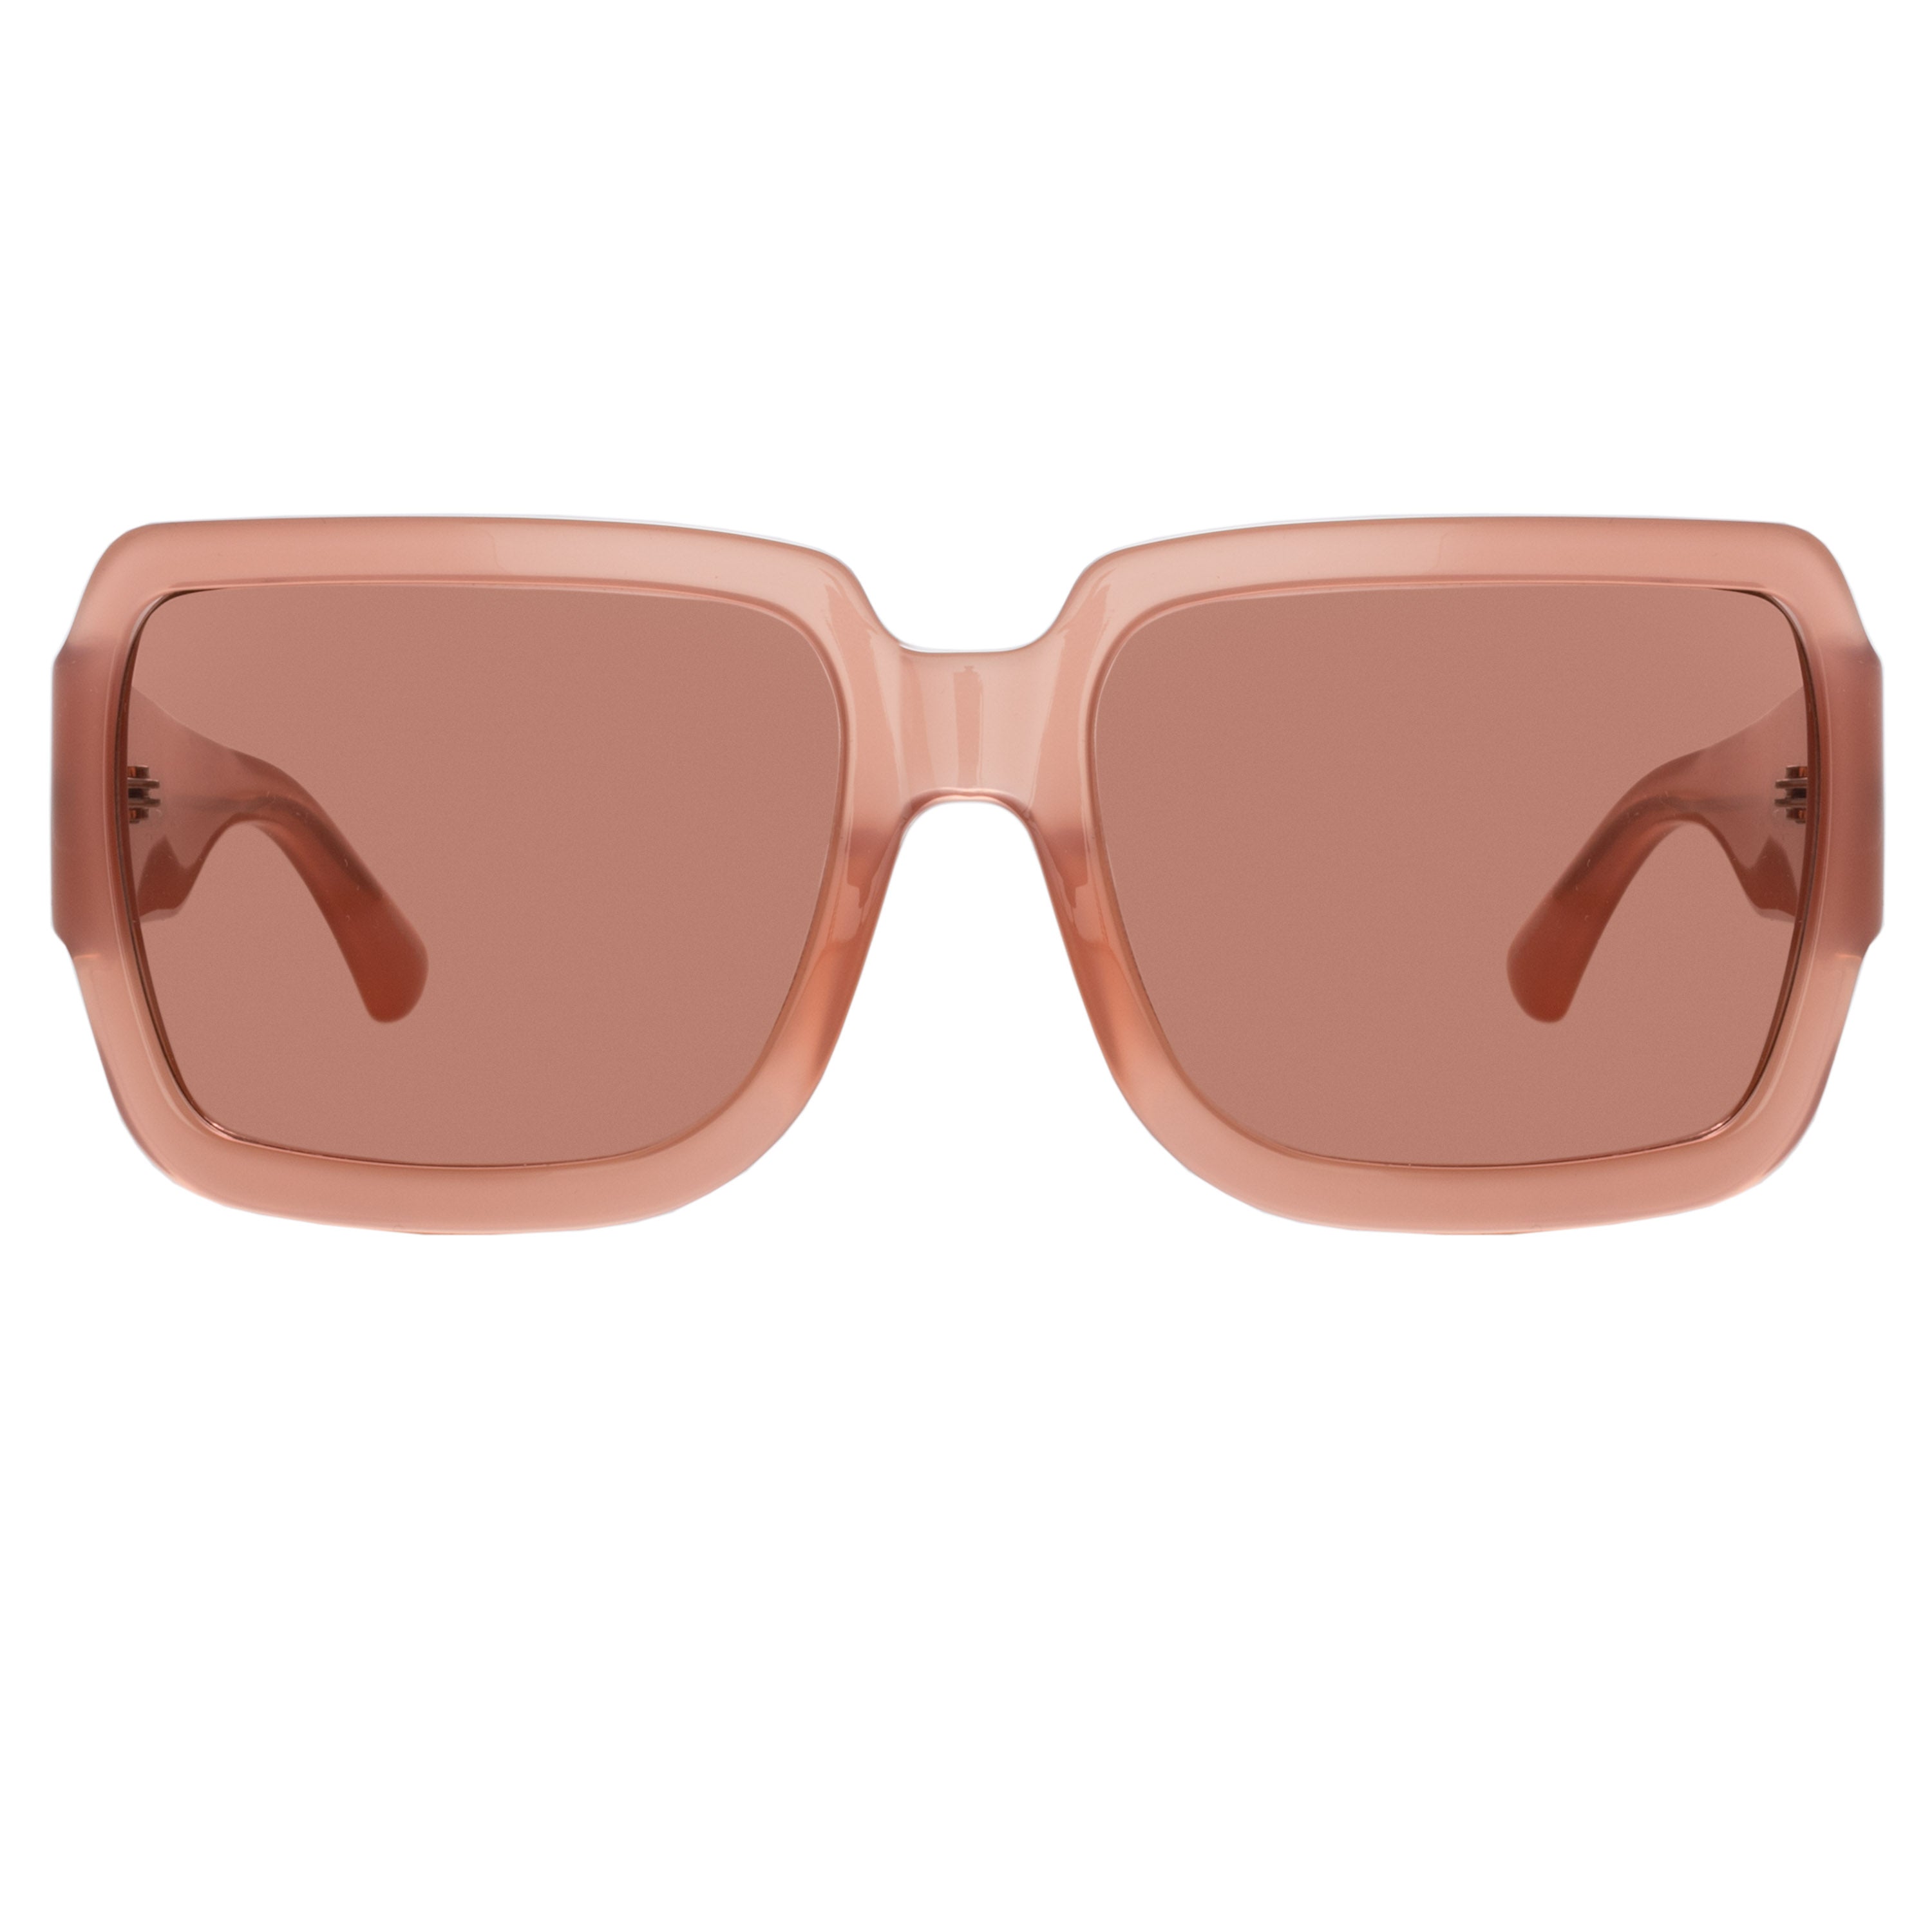 Dries Van Noten Oversized Sunglasses in Rust